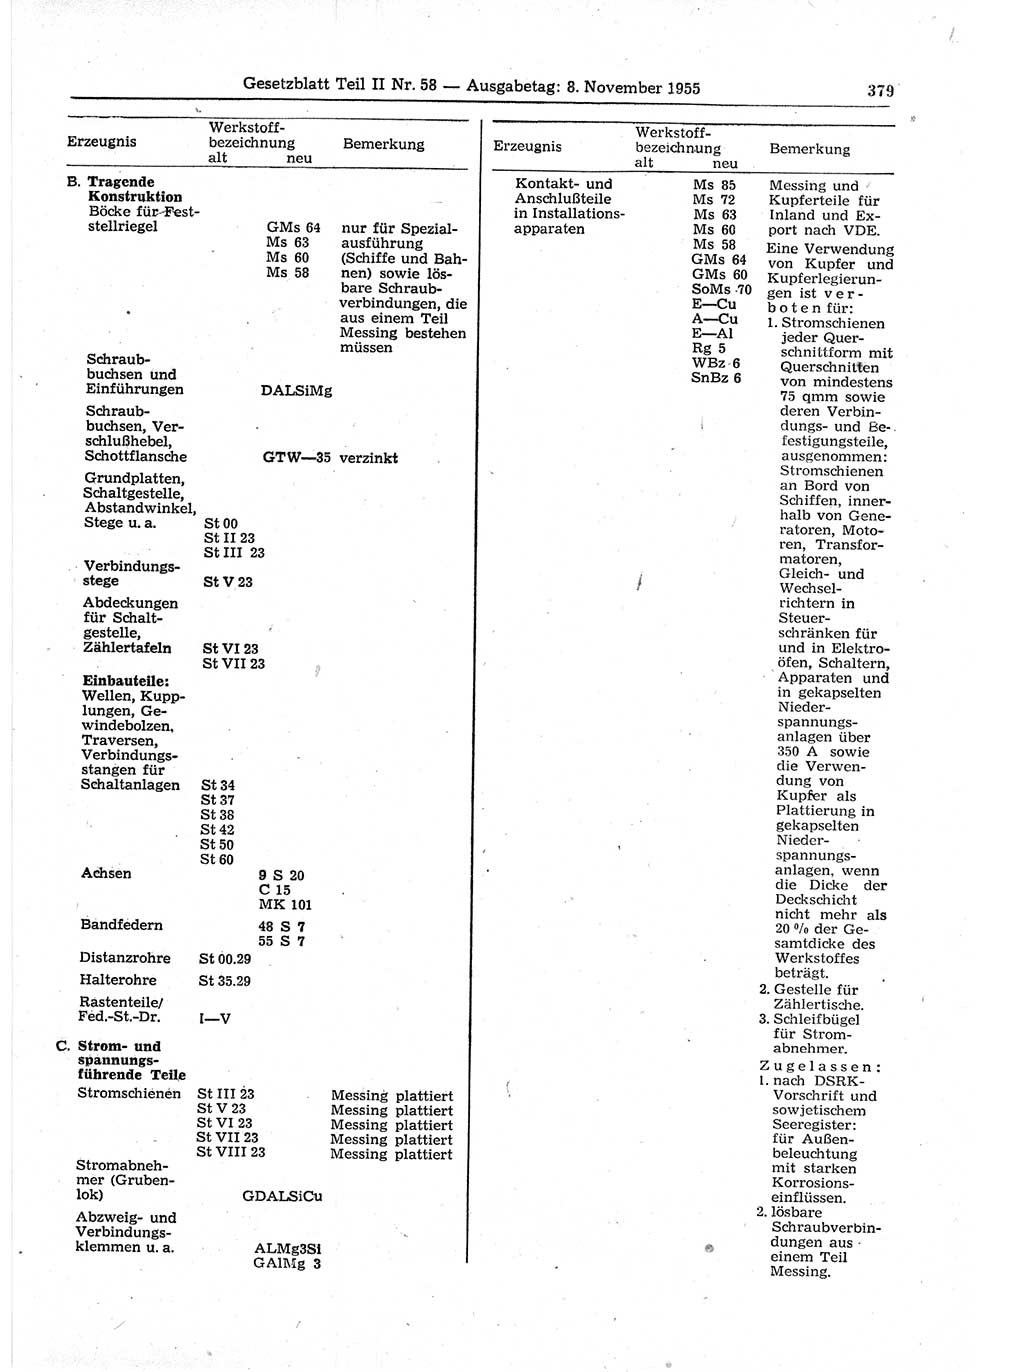 Gesetzblatt (GBl.) der Deutschen Demokratischen Republik (DDR) Teil ⅠⅠ 1955, Seite 379 (GBl. DDR ⅠⅠ 1955, S. 379)